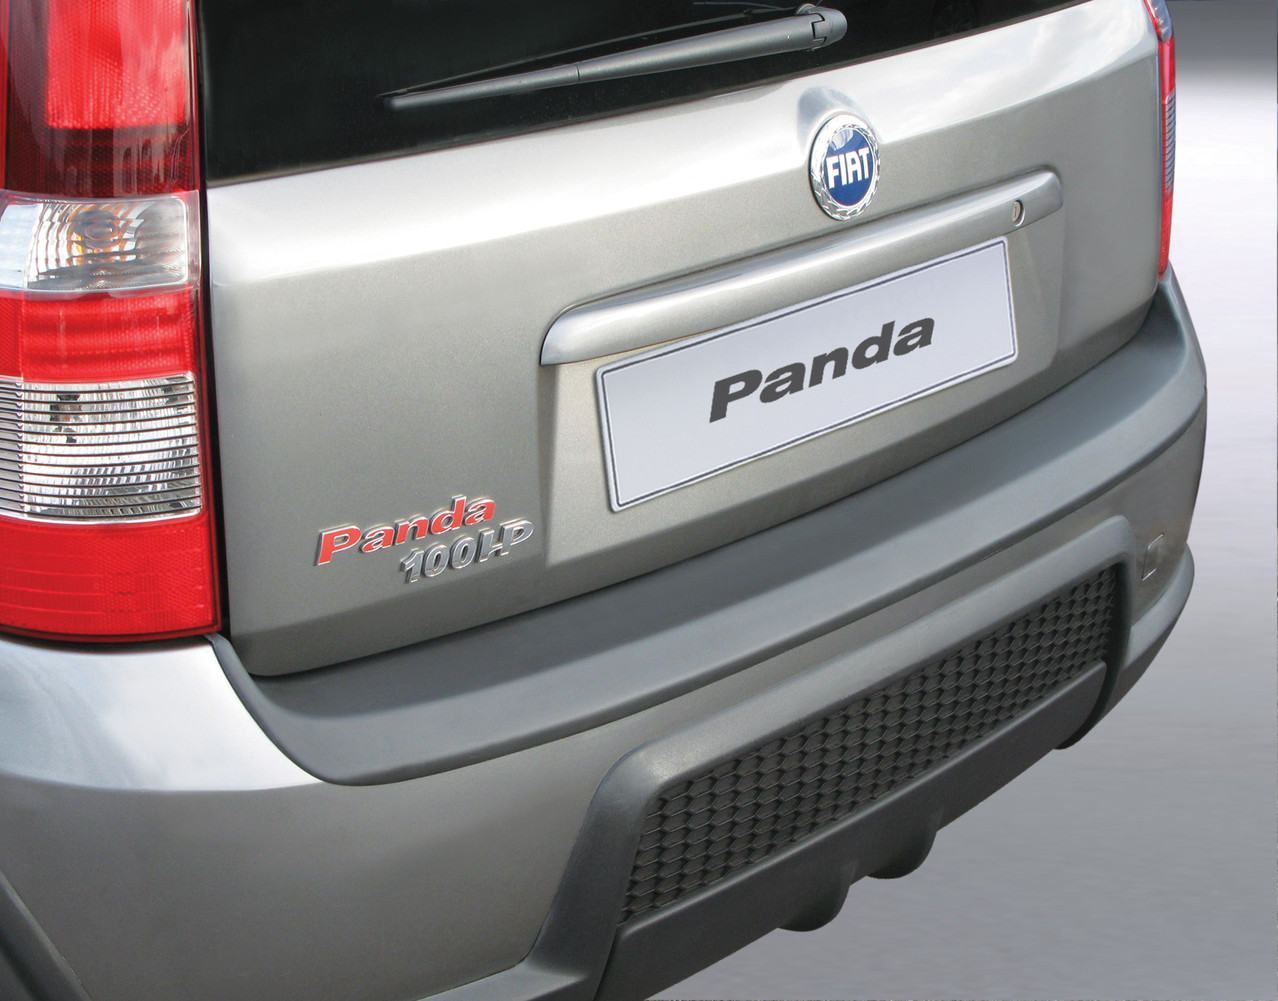 Ladekante Ihres Fahrzeuges Panda die Ladekantenschutz für Fiat - Schutz für